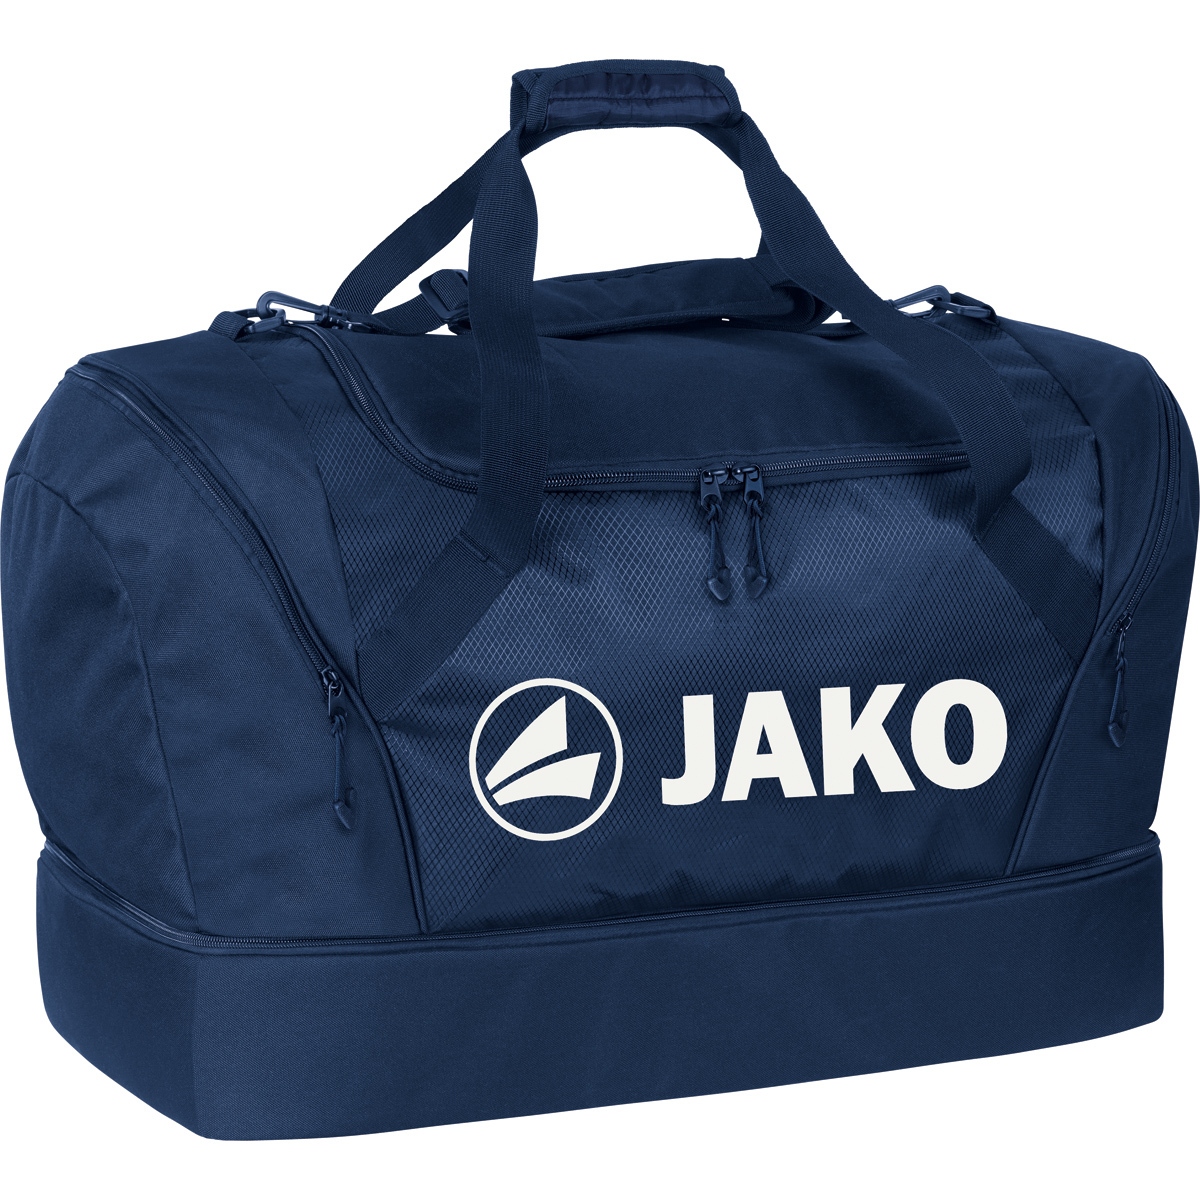 JAKO Sporttasche "JAKO" - dunkelblau - Größe M